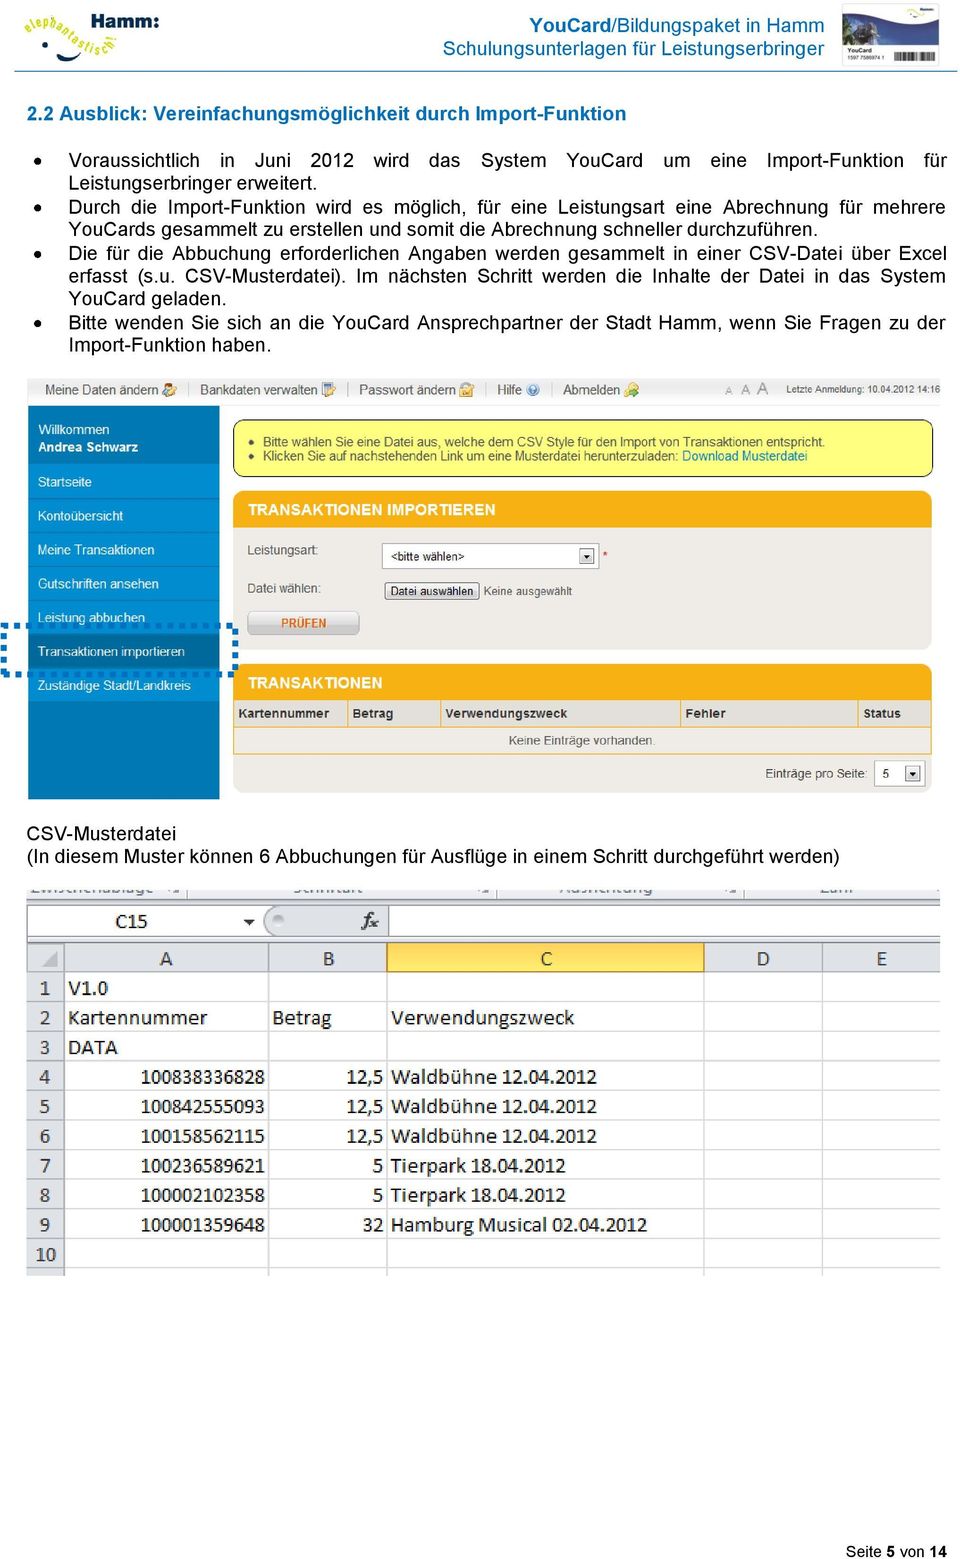 Die für die Abbuchung erforderlichen Angaben werden gesammelt in einer CSV-Datei über Excel erfasst (s.u. CSV-Musterdatei).